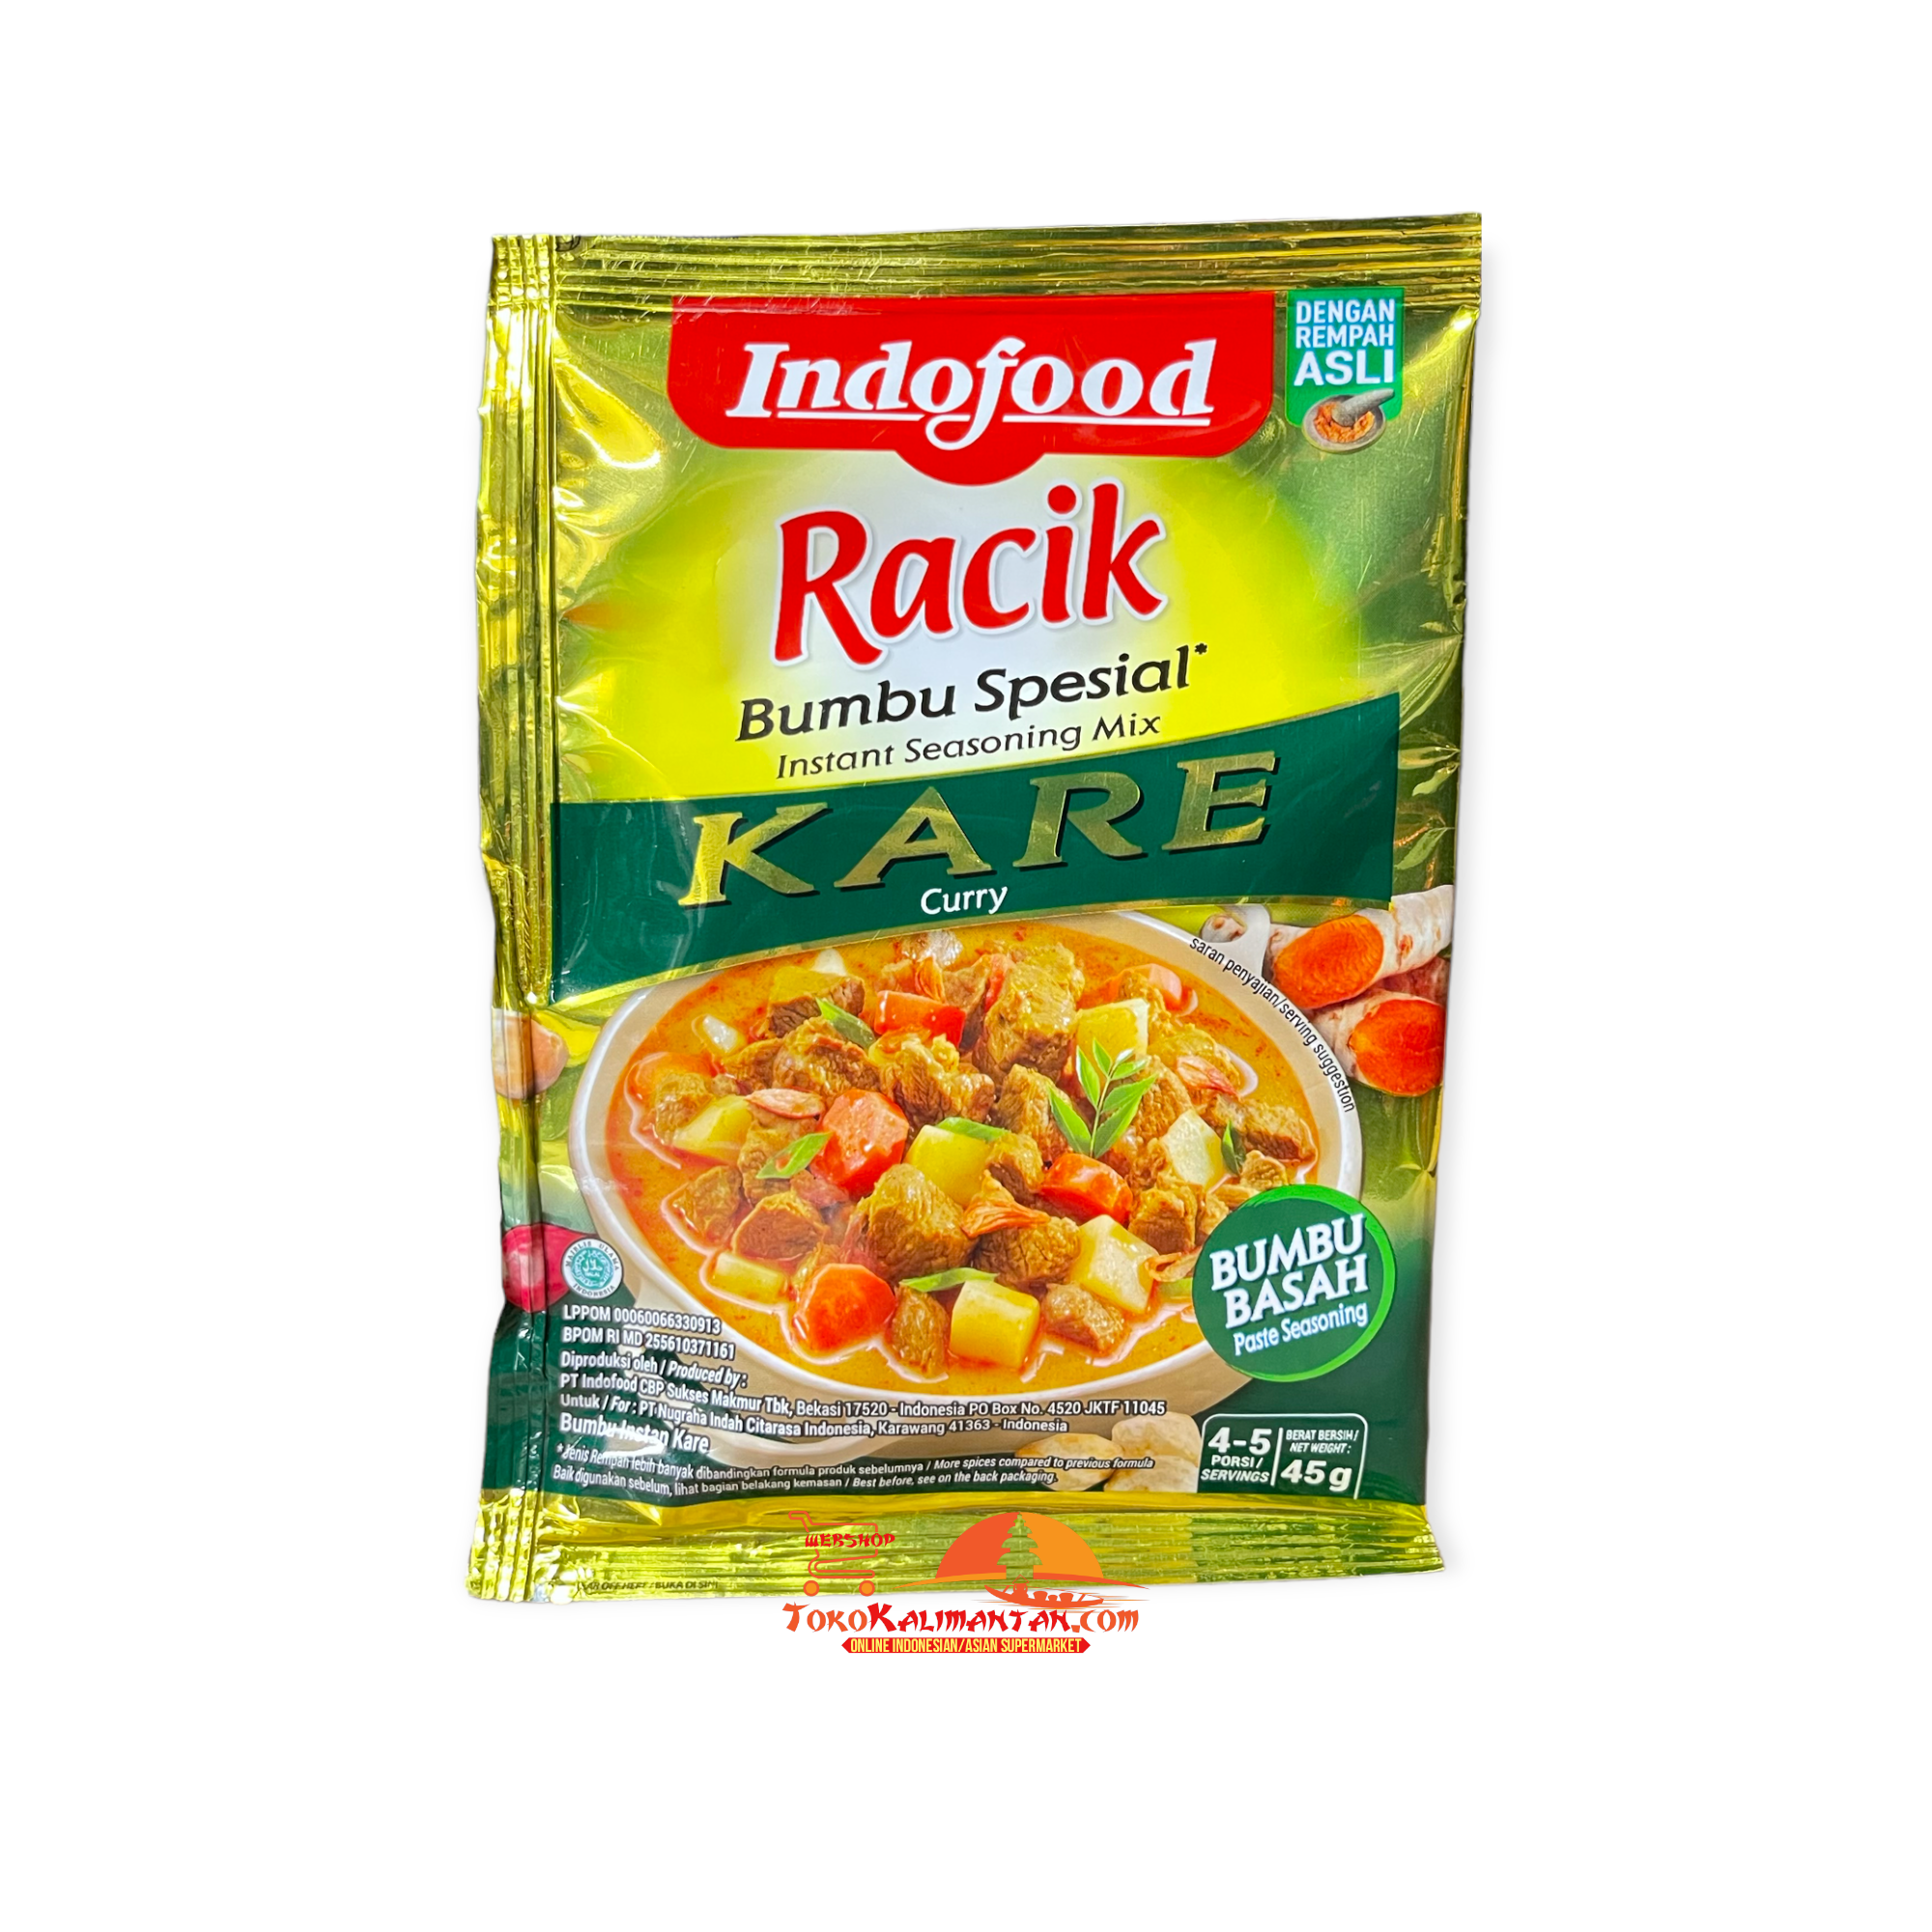 Indofood Racik Indofood Racik - Kare